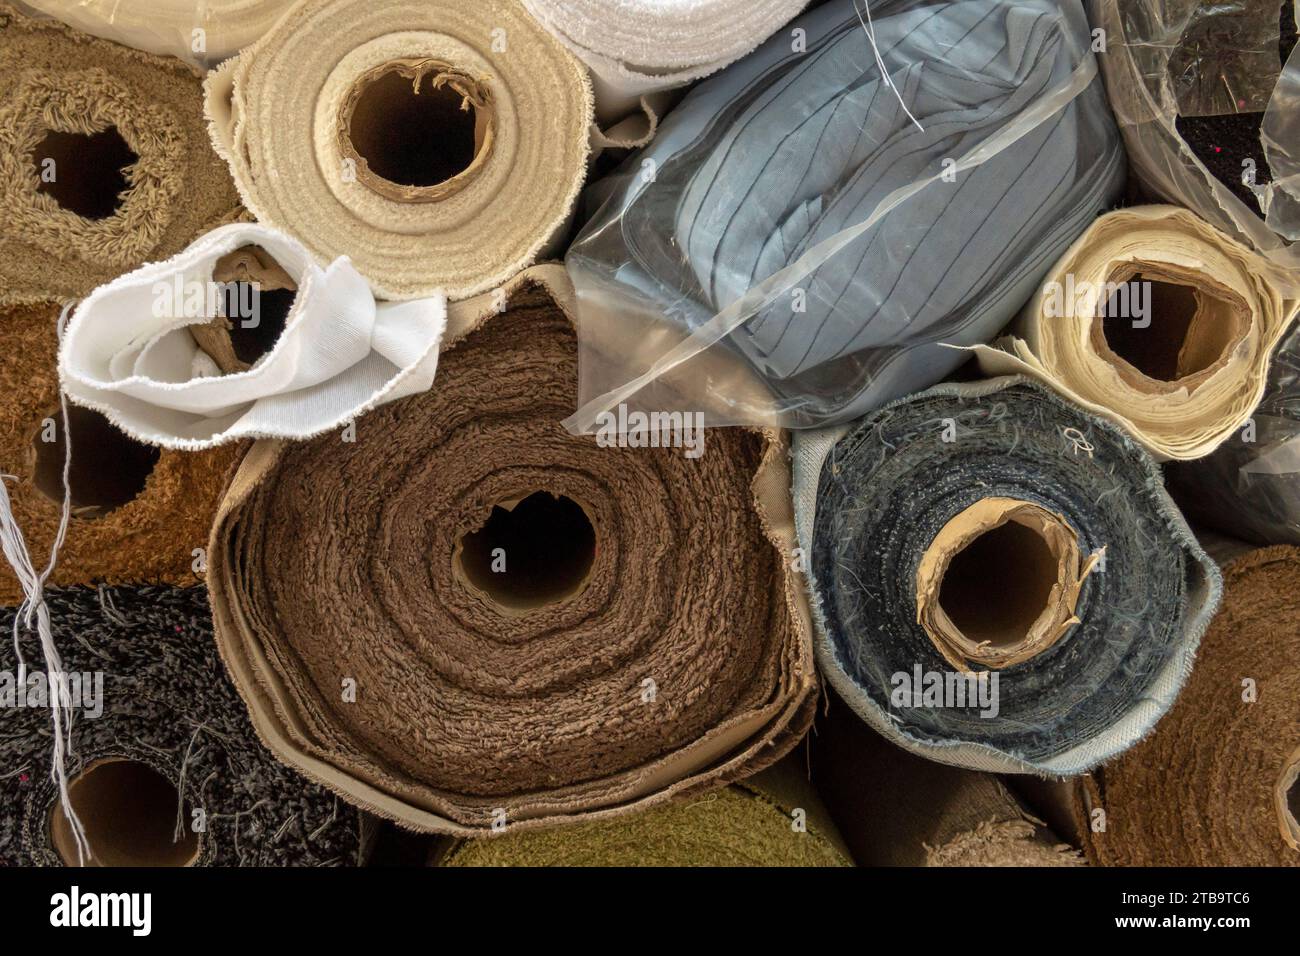 Gros plan de rouleaux empilés de tissu, exposés sur un marché de rue vendant des textiles. Manacor, île de Majorque, Espagne Banque D'Images